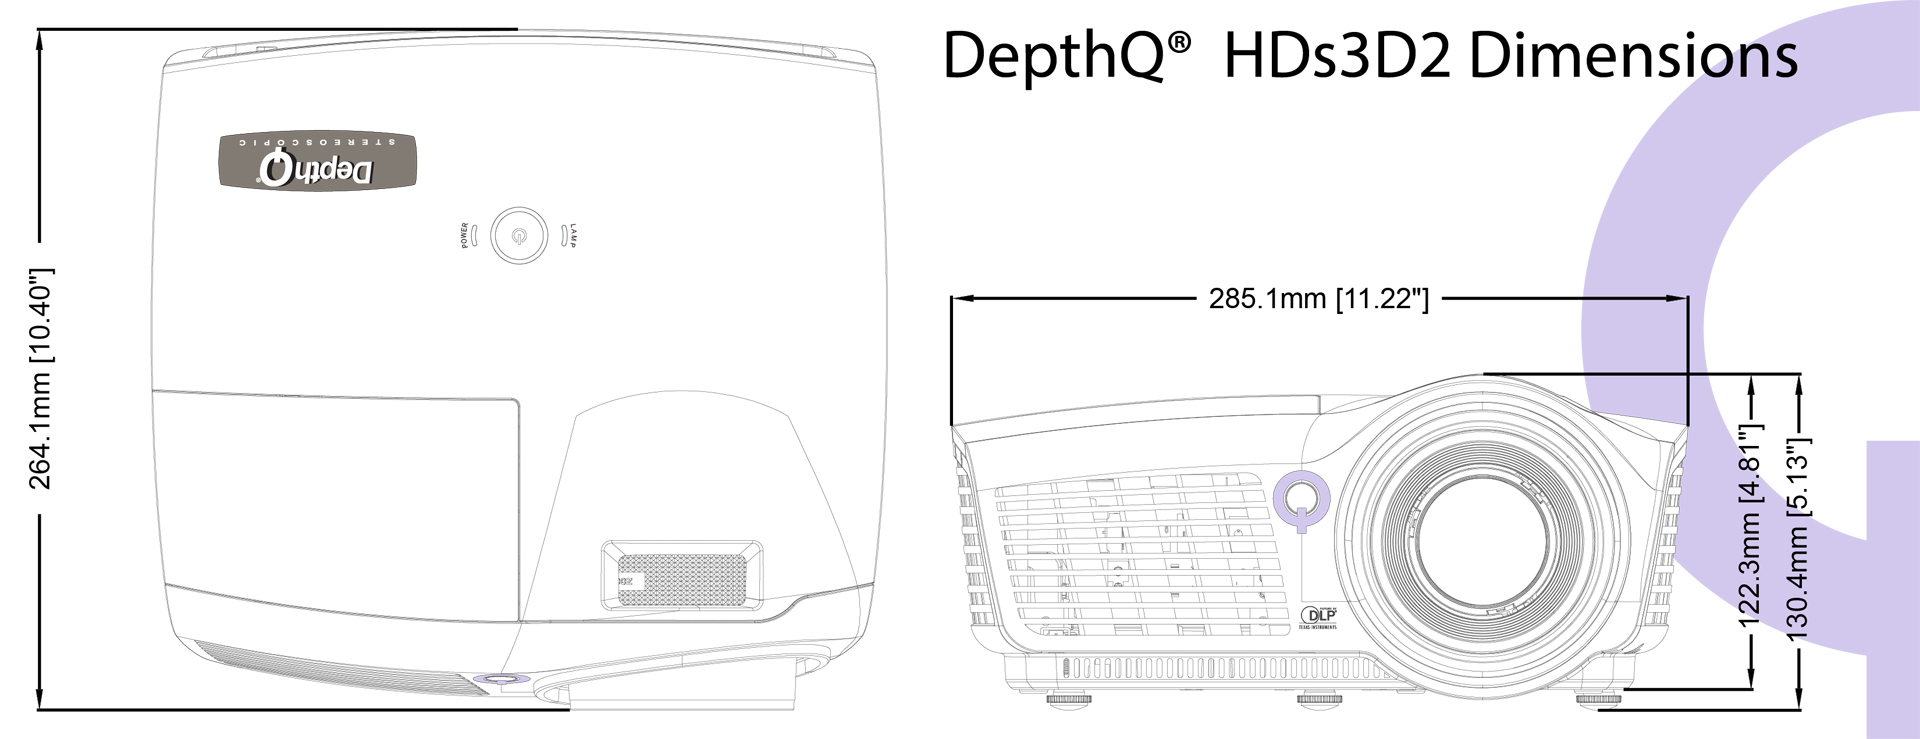 DepthQ® HDs3D2 3D Projector Dimensions